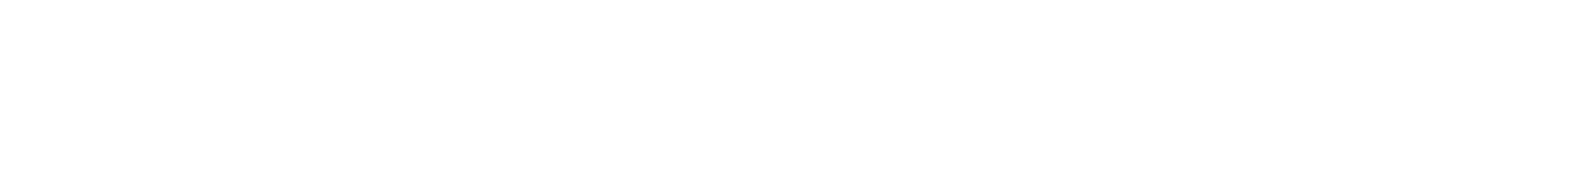 George Weston logo grand pour les fonds sombres (PNG transparent)